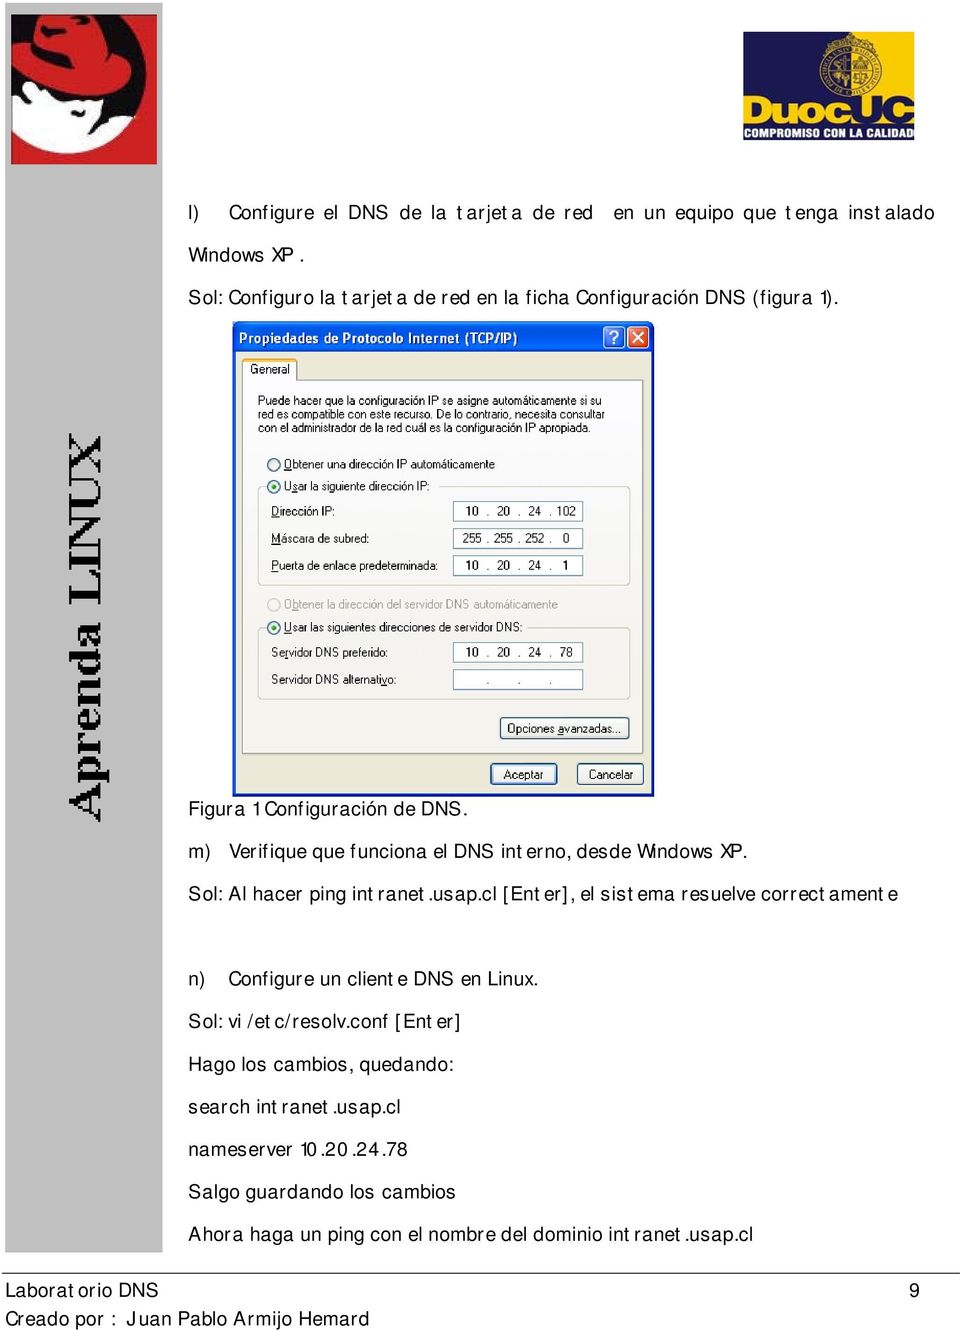 m) Verifique que funciona el DNS interno, desde Windows XP. Sol: Al hacer ping intranet.usap.